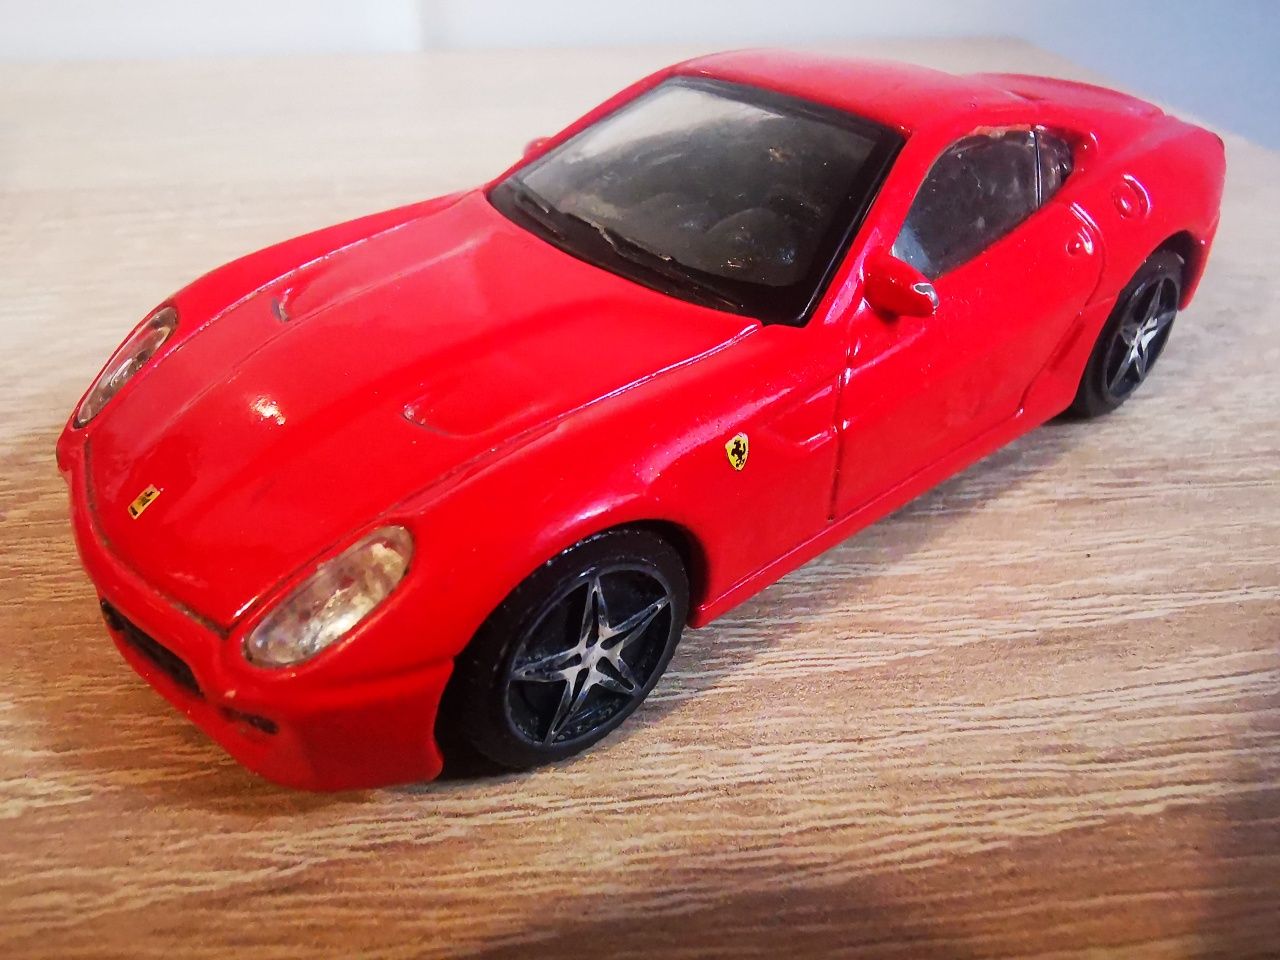 Macheta Ferrari 599 GTB  1:43 / Masinuta Ferrari de colectie